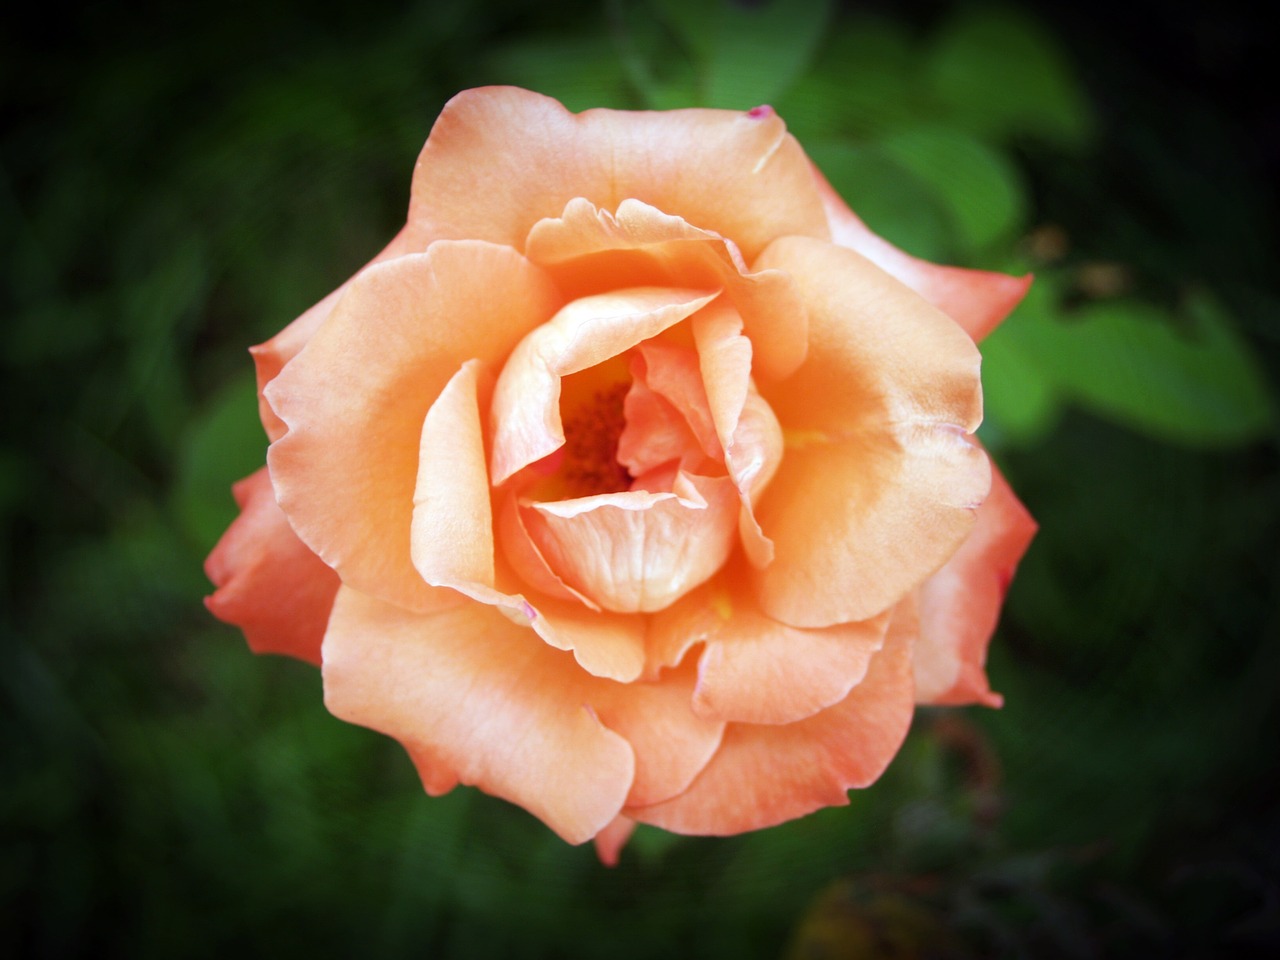 rose flower gardening free photo